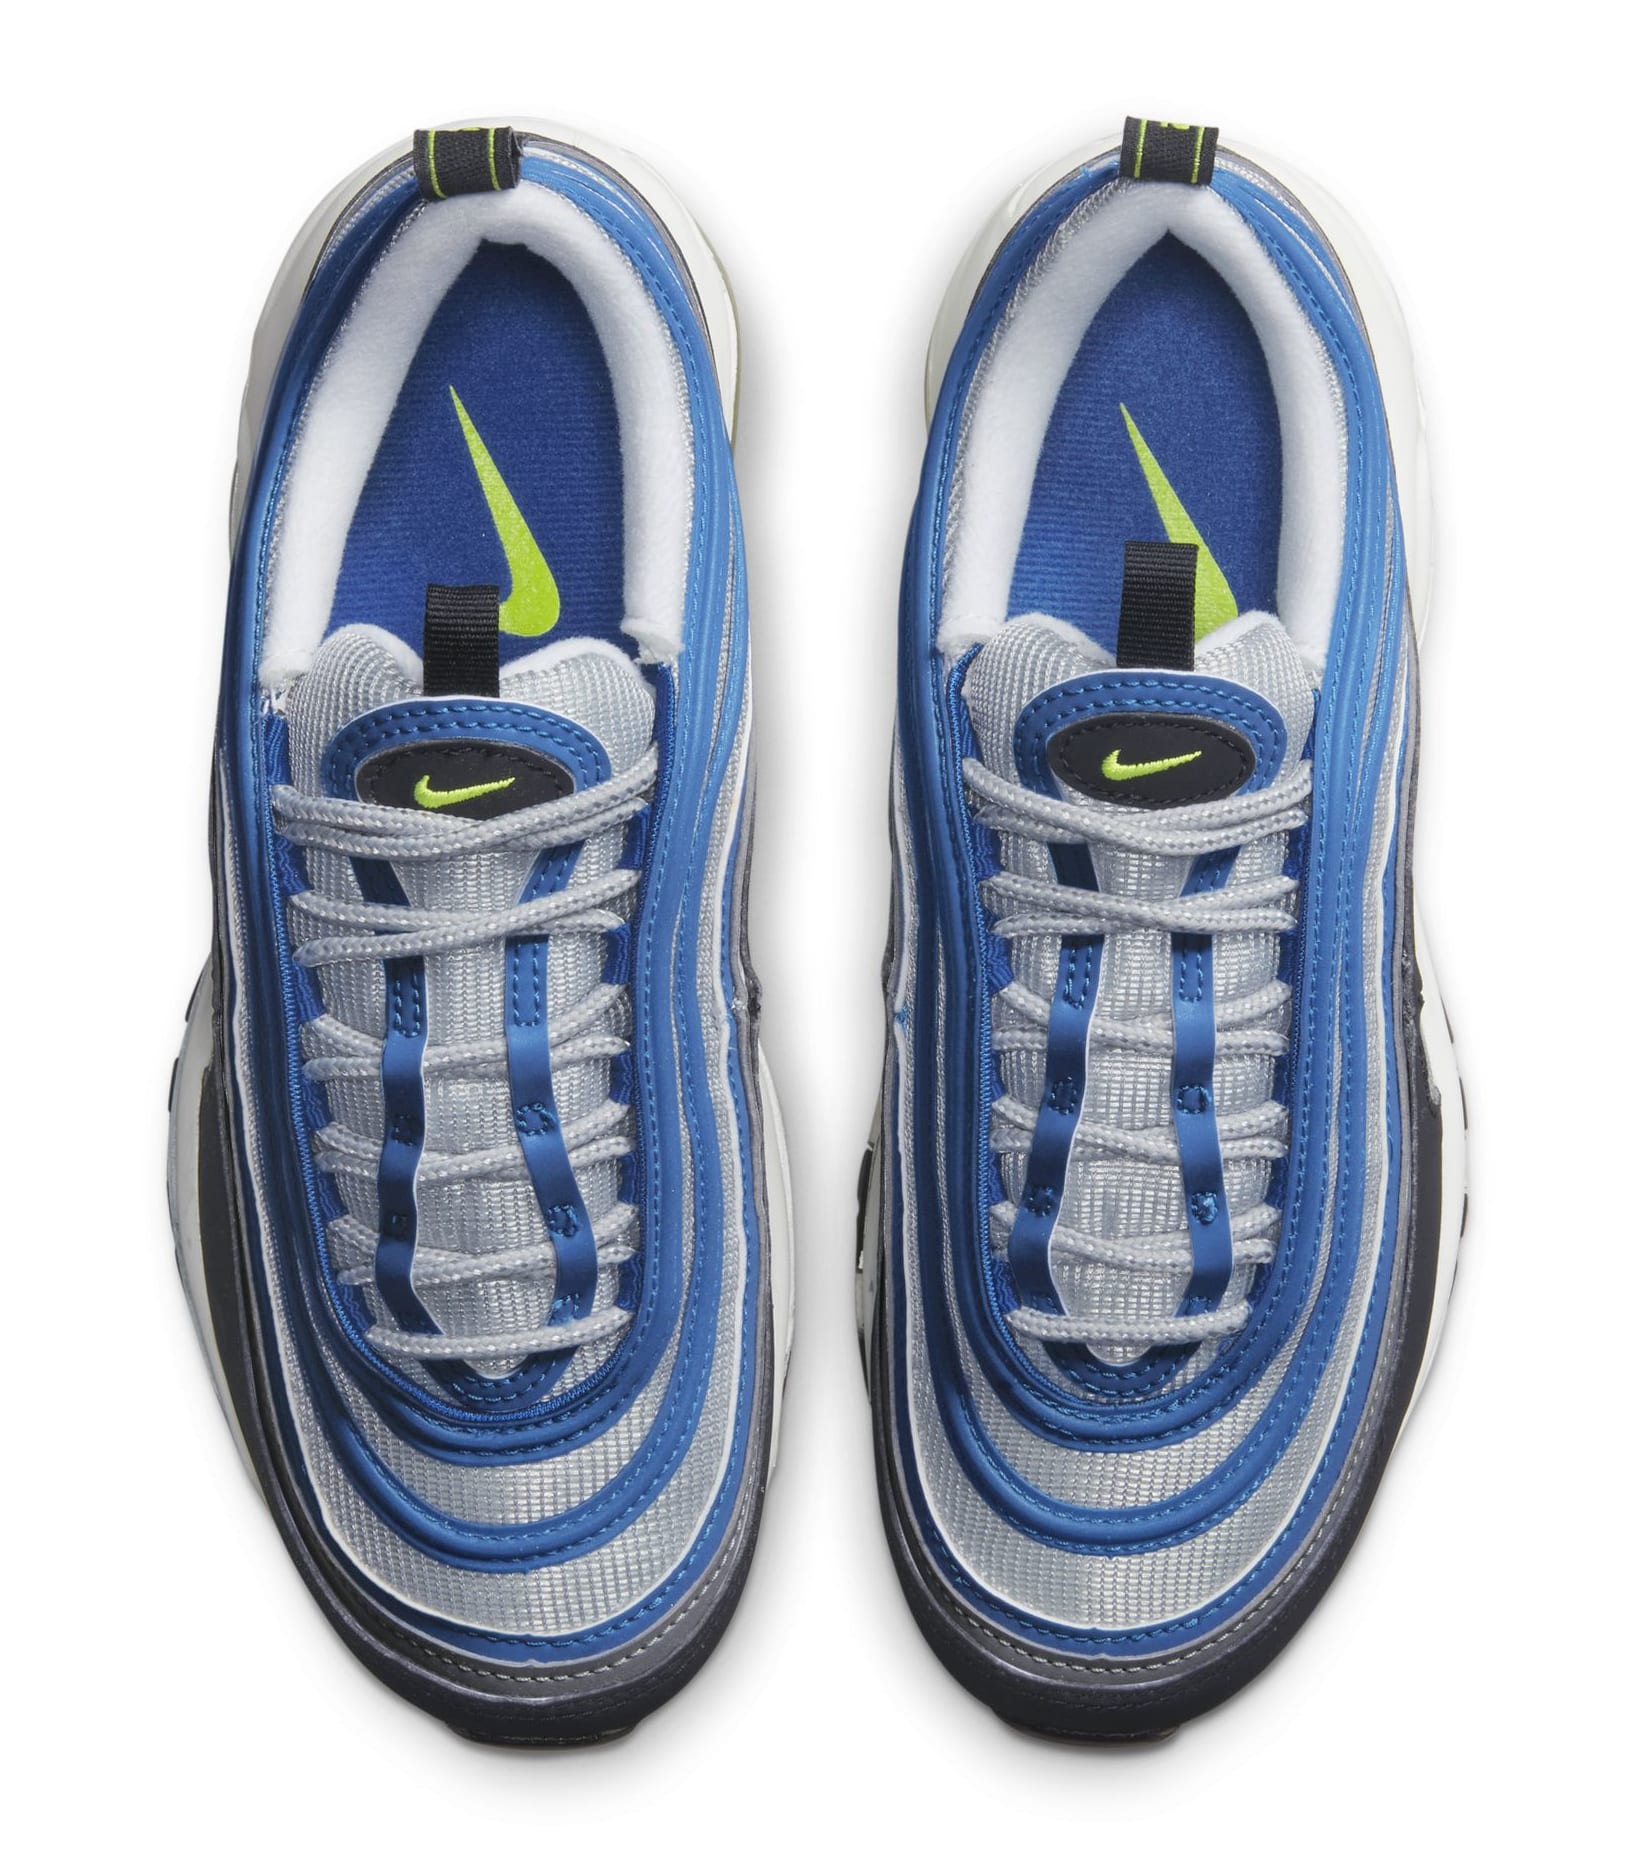 Nike Air Max 97 Neon/Atlantic Blue Top